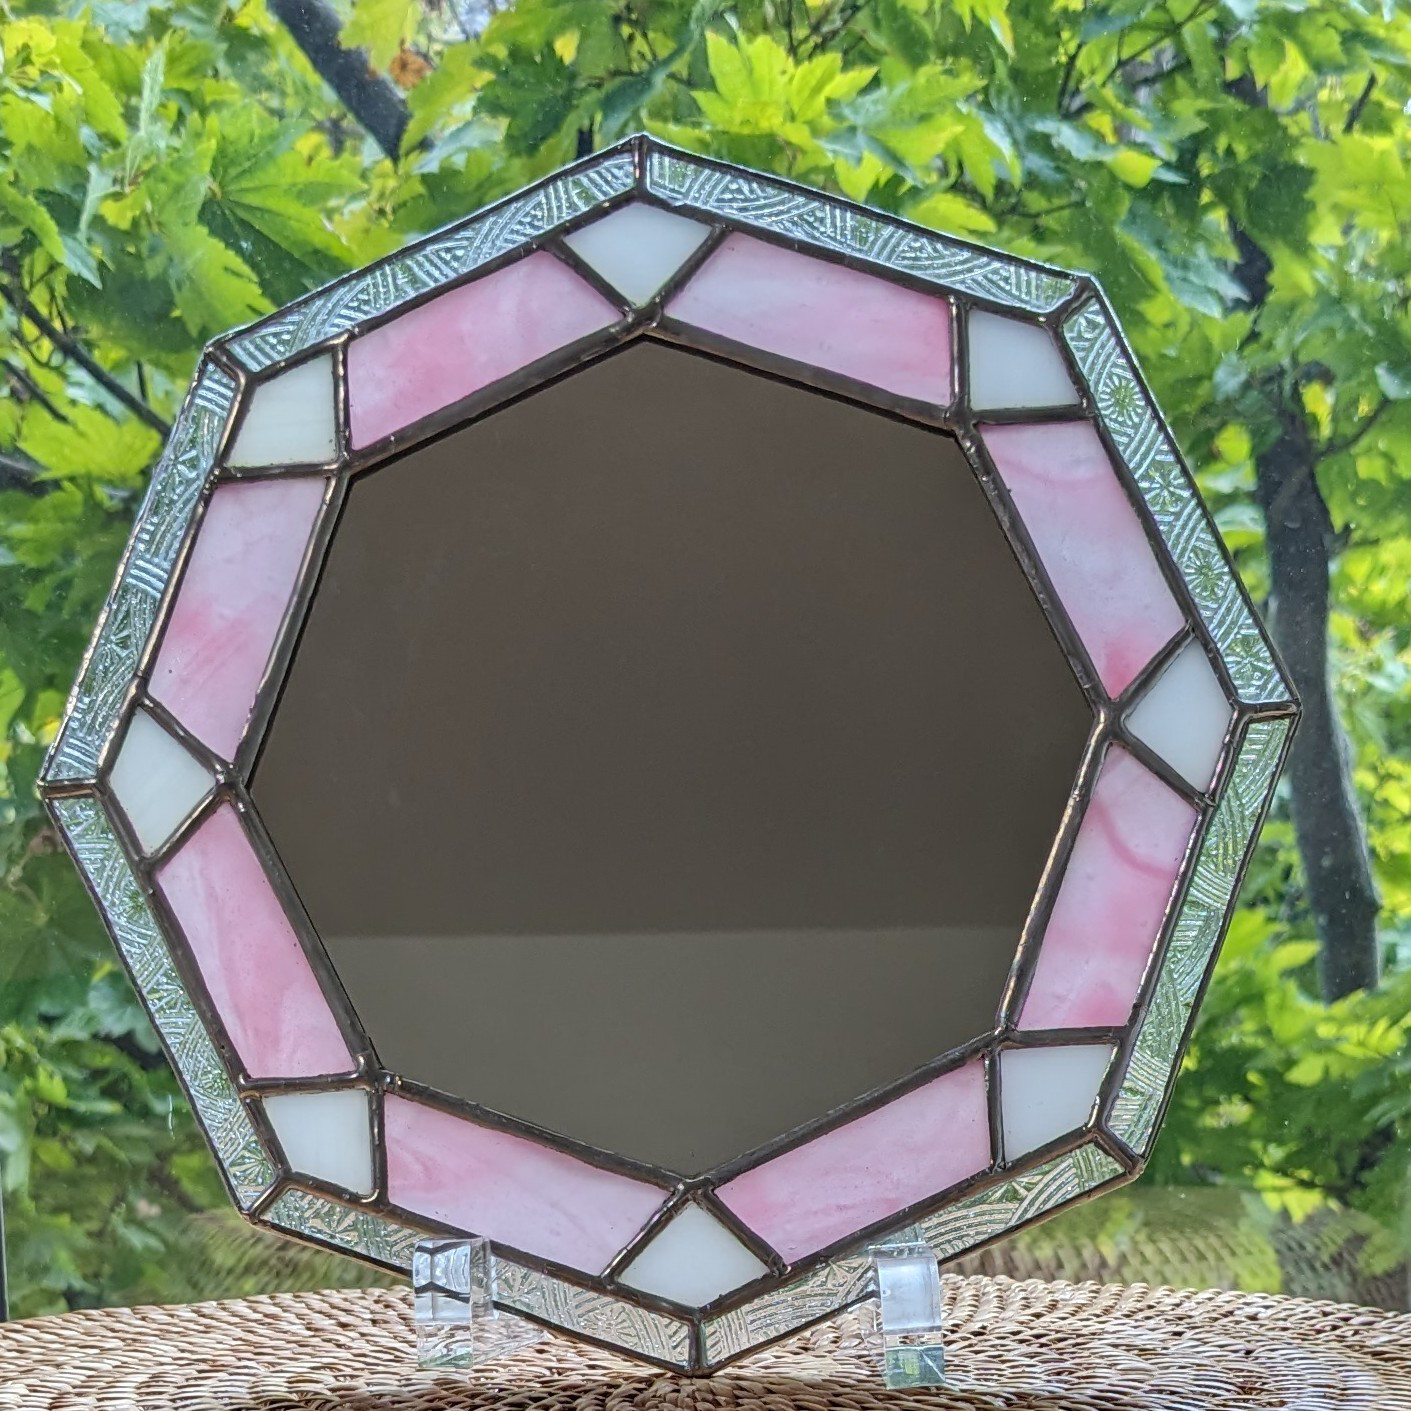 ☆ステンドグラス☆ 八角形の鏡 ピンク その他インテリア雑貨 natural 